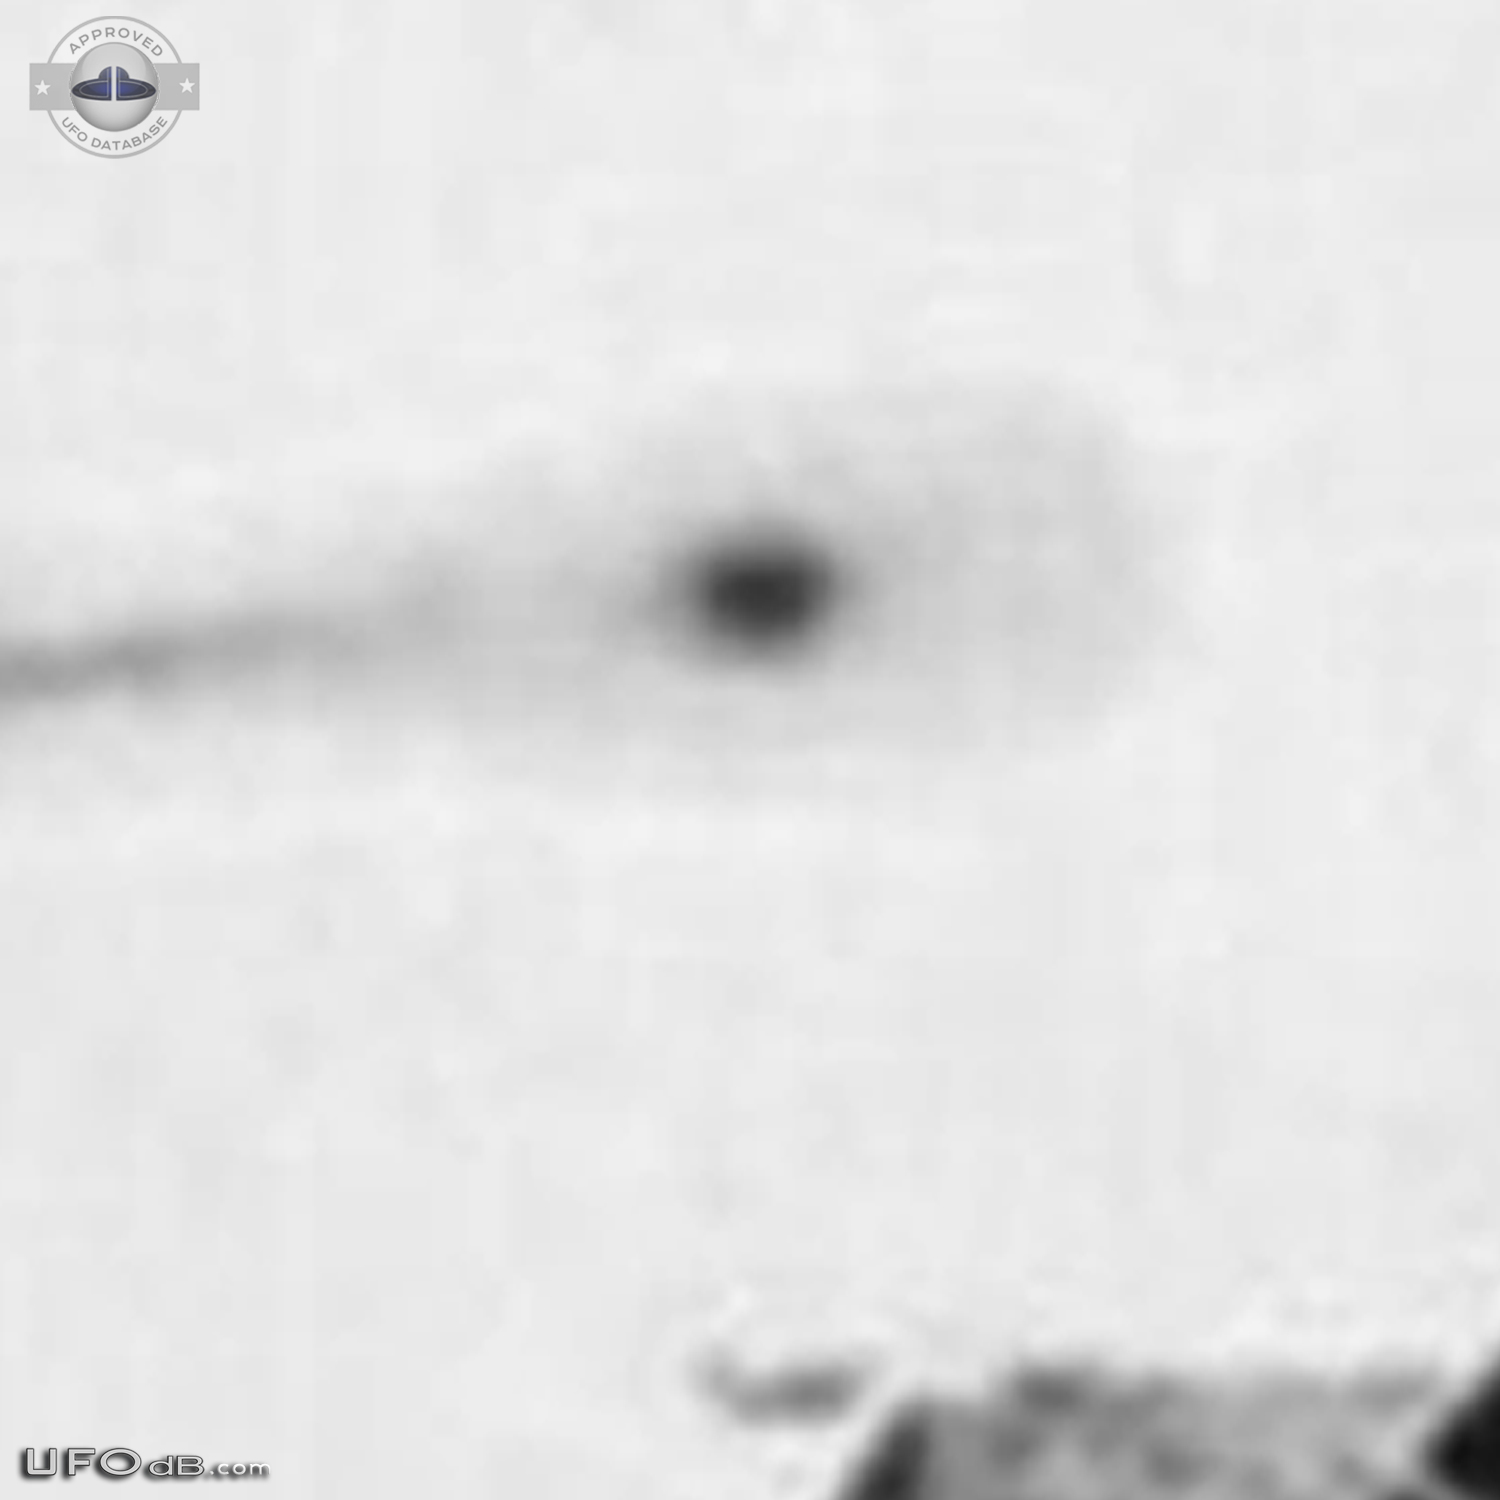 CIA Declassified UFO picture of 1965 in Omaha, Nebraska USA UFO Picture #631-6